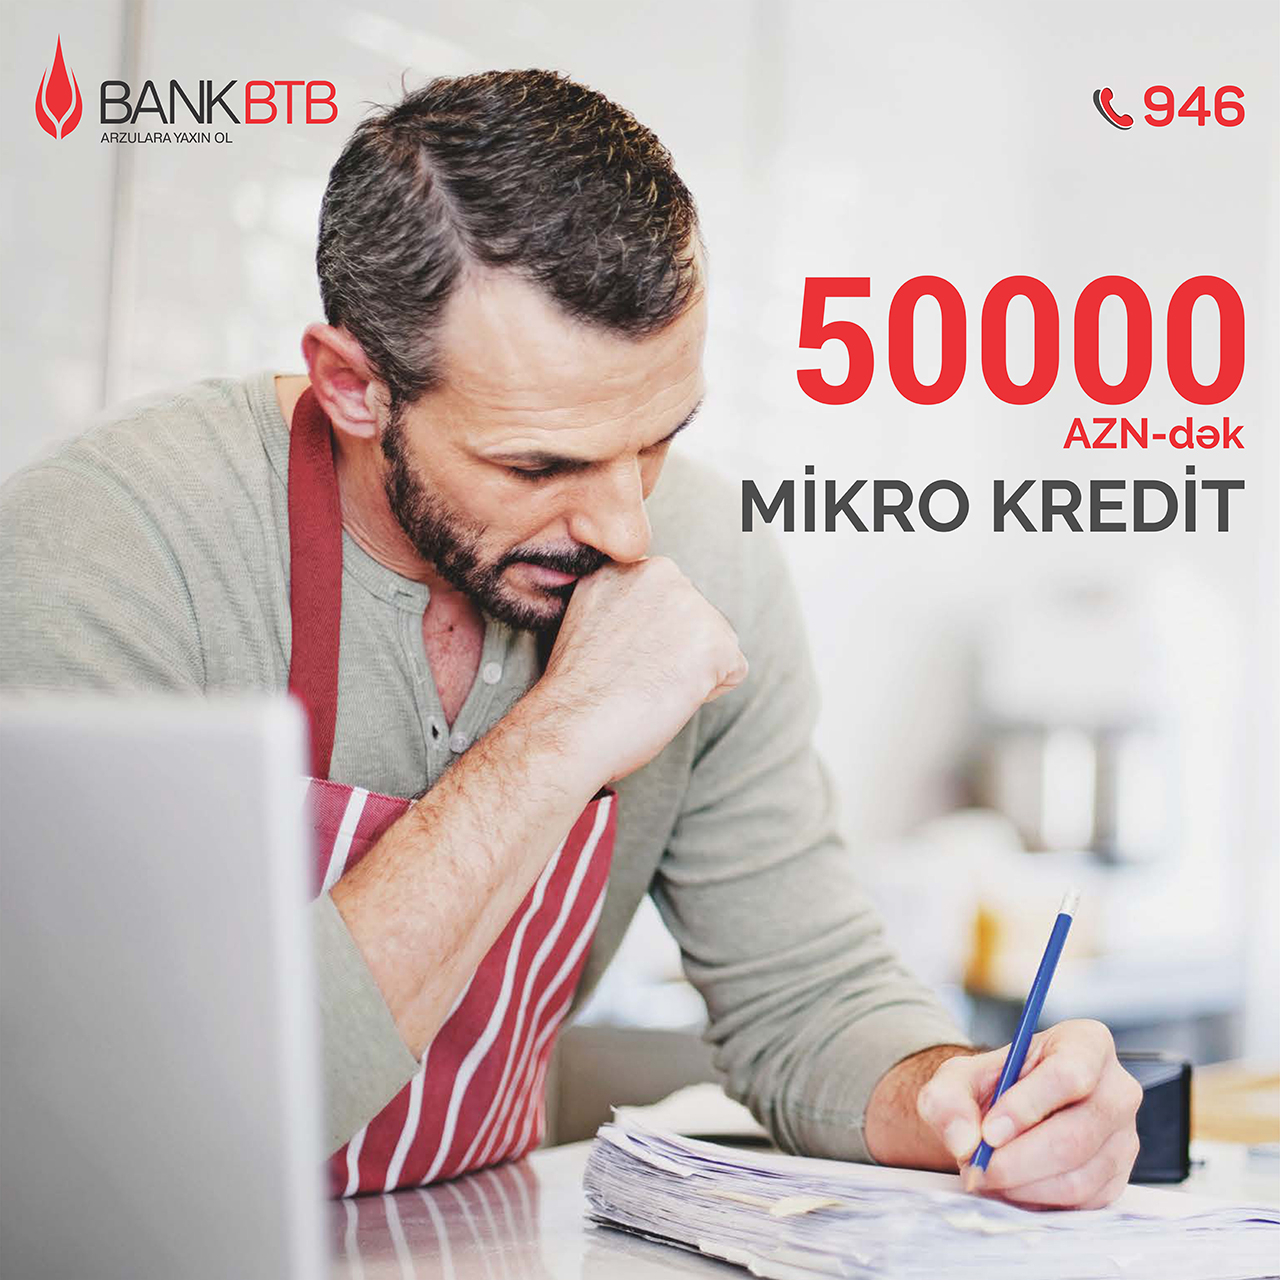 Bank BTB-dən sahibkarlara dəstək üçün mikro kreditlər